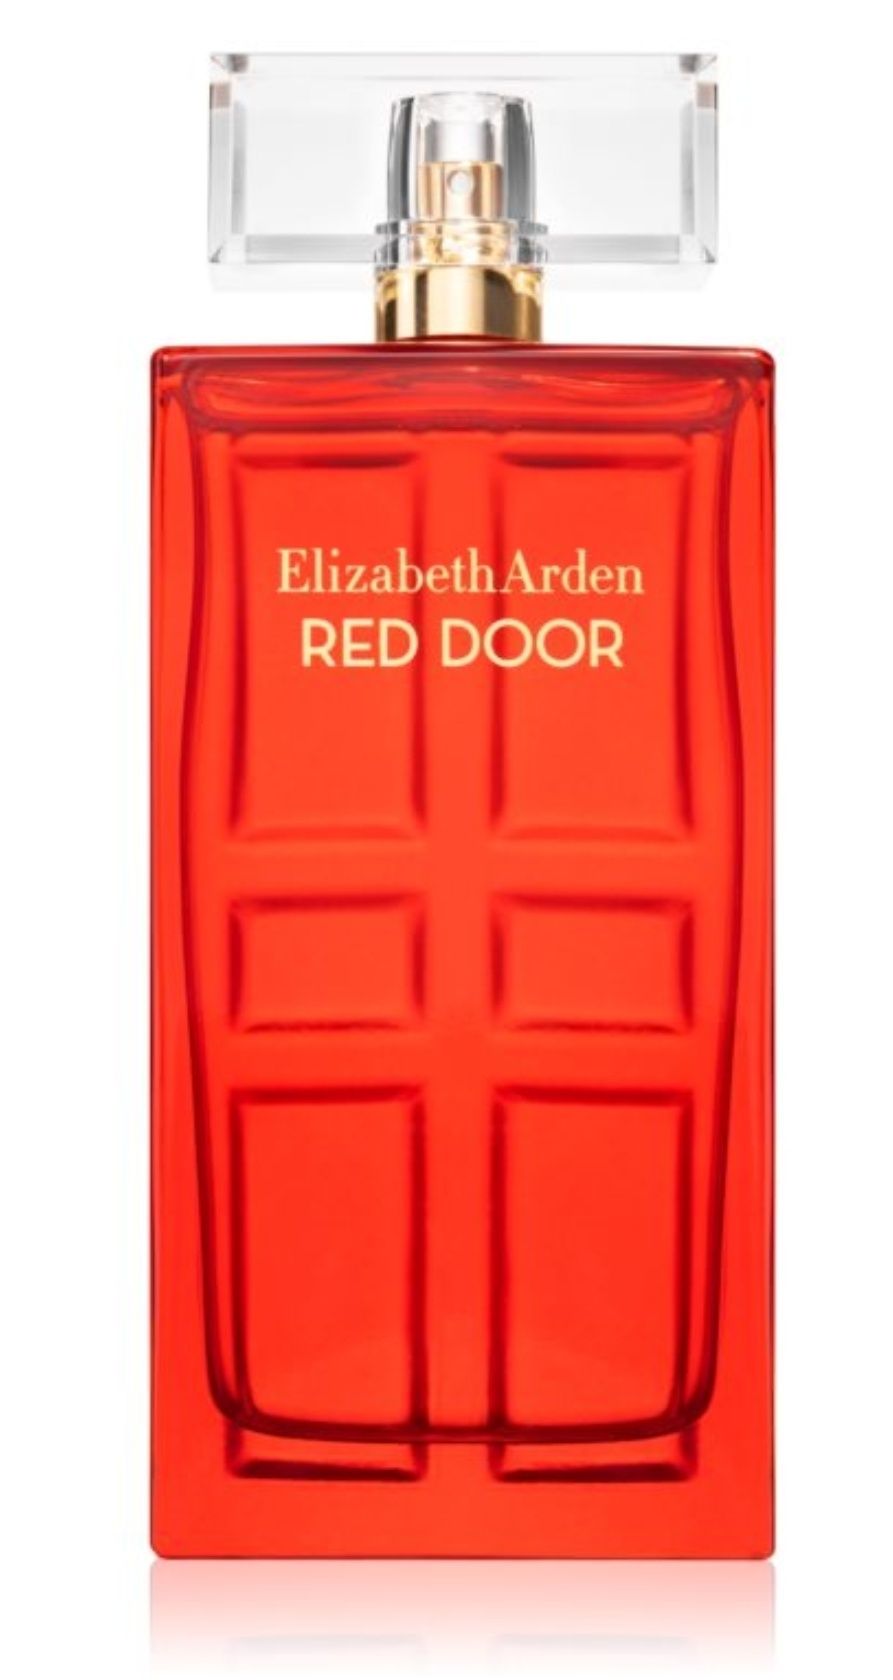 Parfum Elizabeth Arden - Red Door 30 ml